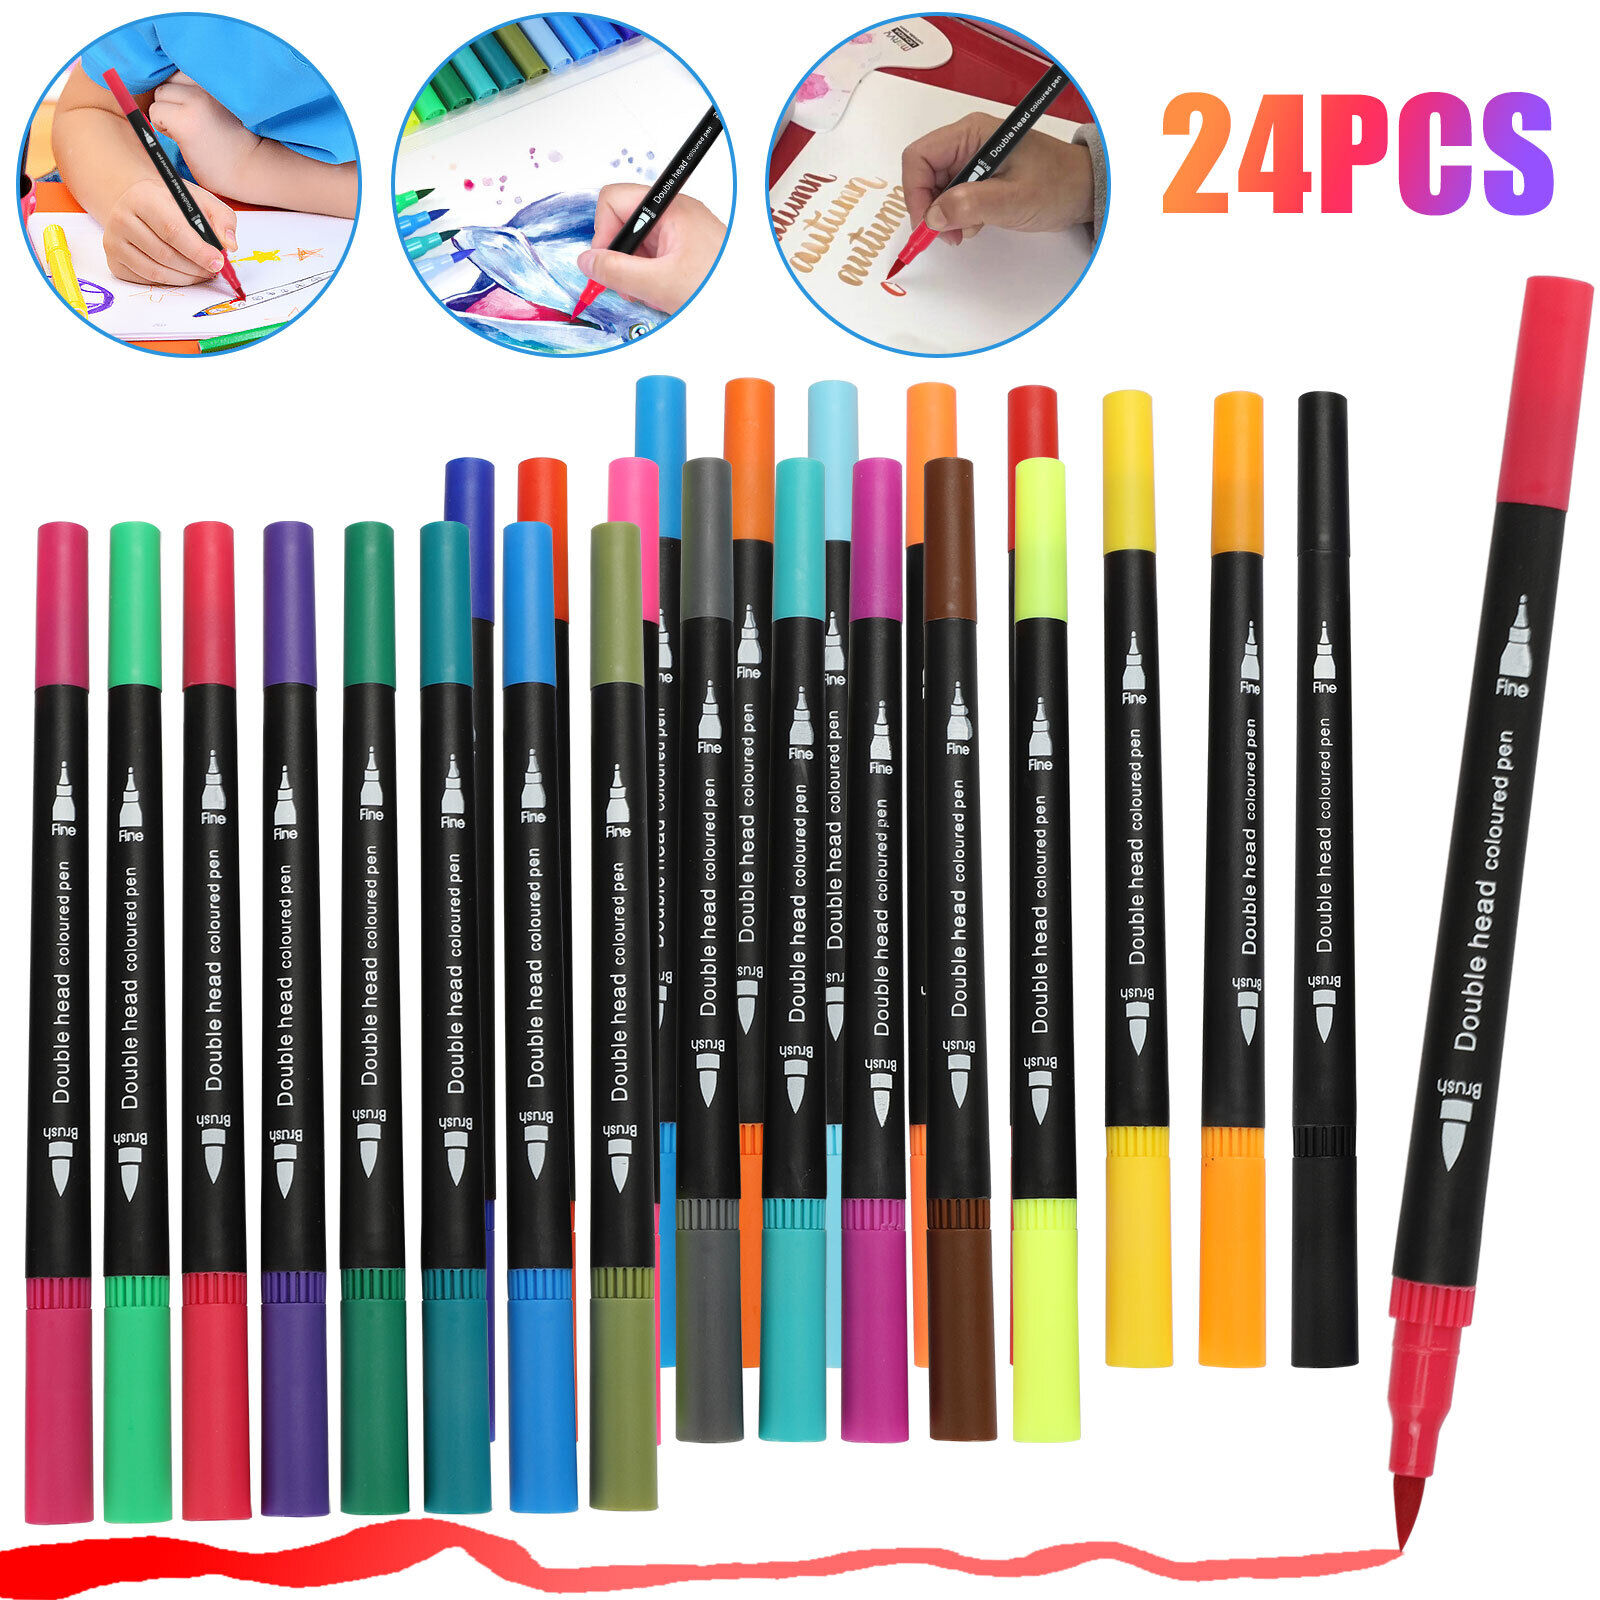 24 Colors Dual Tip Marker Paint Pens Set Universal Permanent for Art DIY Project